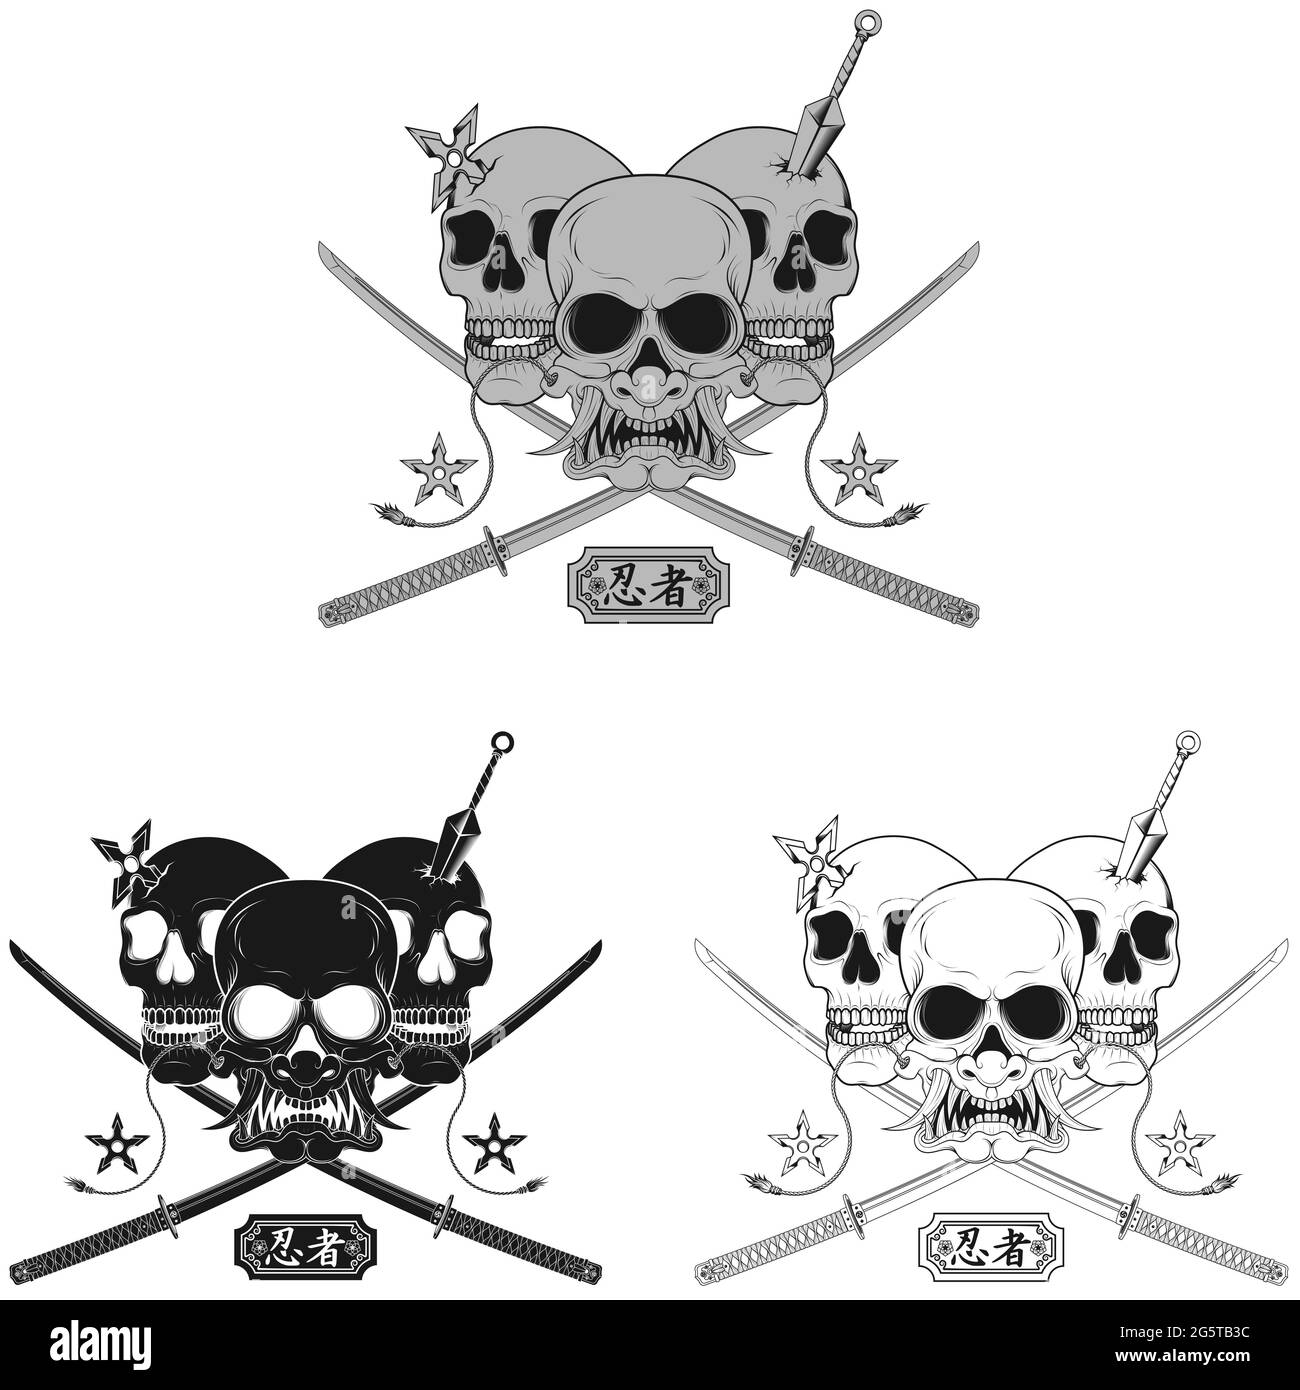 Conception vectorielle du crâne de ninja avec masque japonais hannya, kunai, shuriken et deux épées de katana, niveaux de gris, noir et blanc Illustration de Vecteur